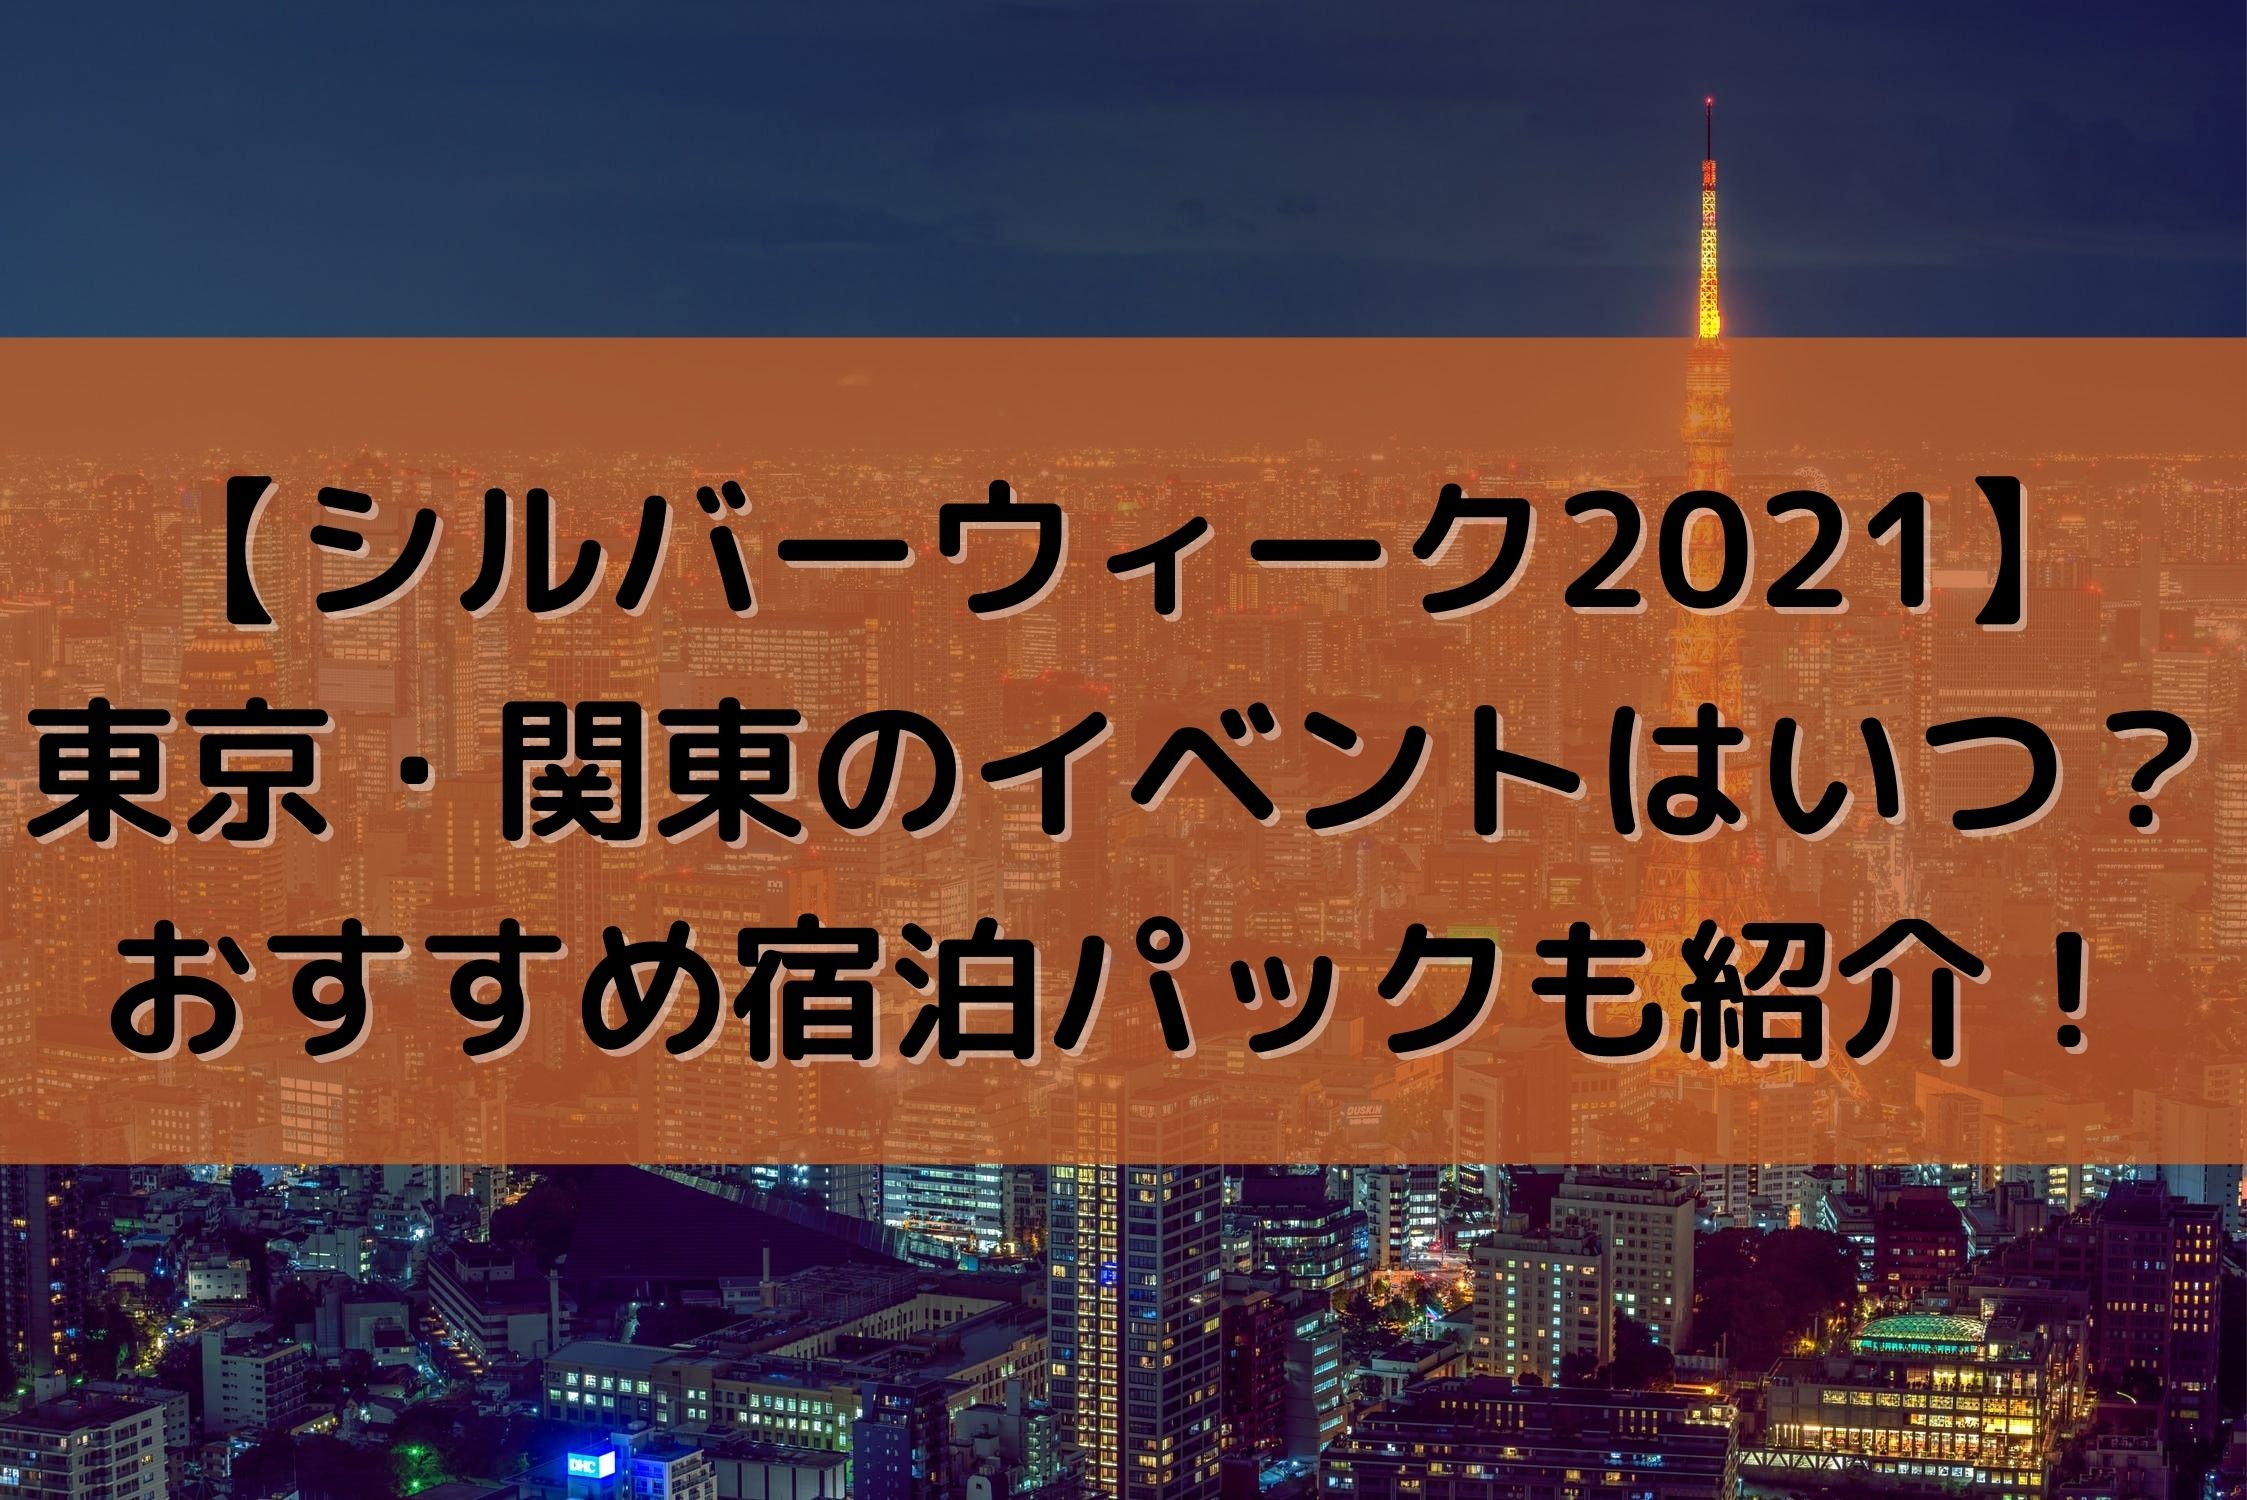 シルバーウィーク21 東京 関東のイベントはいつ おすすめ宿泊パックも紹介